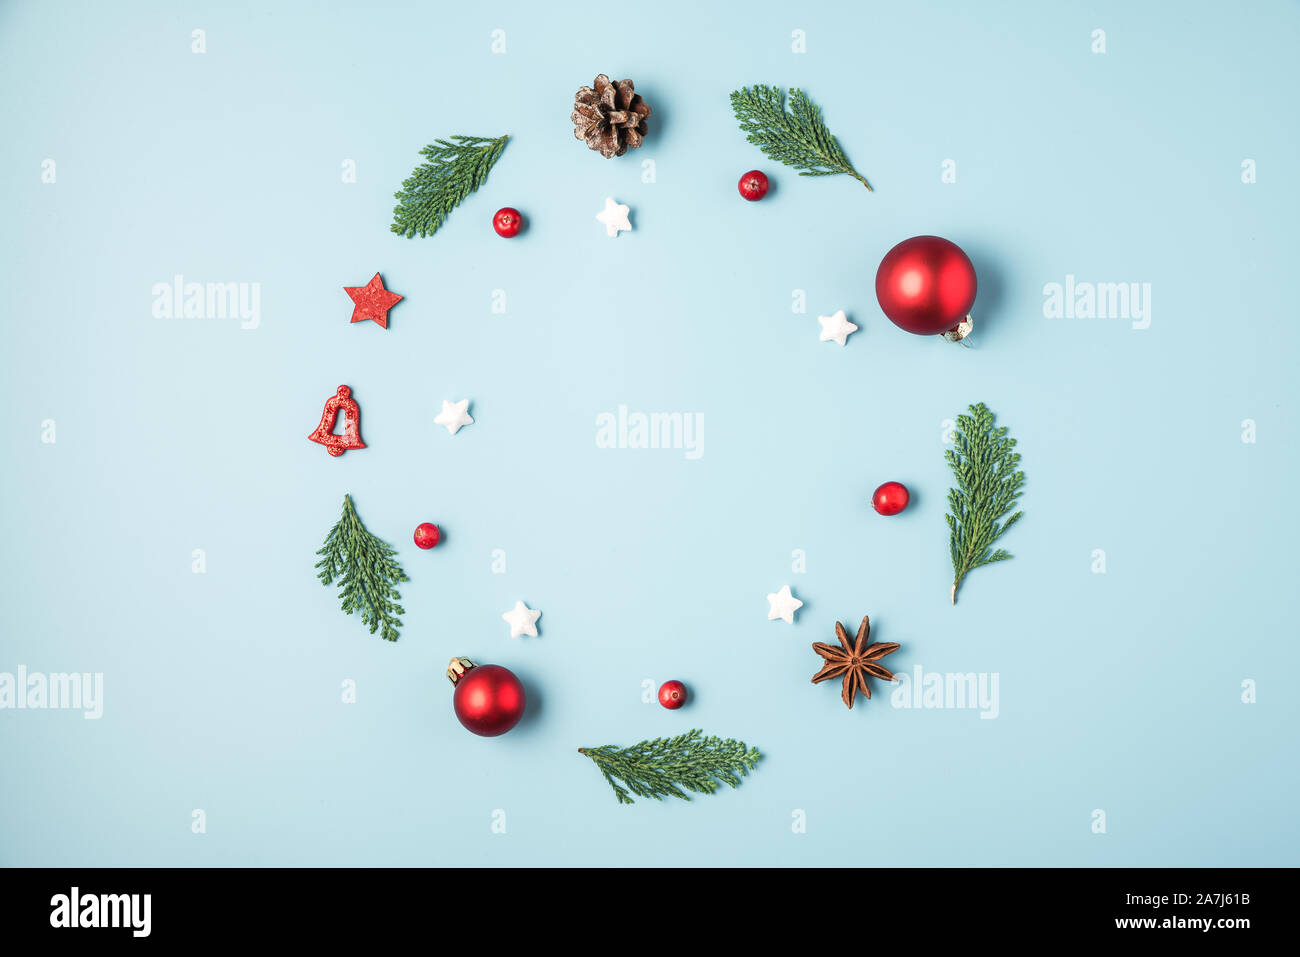 Couronne de noël faites de branches de sapins, décorations rouges, baies d'hiver, pommes de pin sur fond bleu. L'hiver, Noël, nouvel an concept. Télévision Banque D'Images